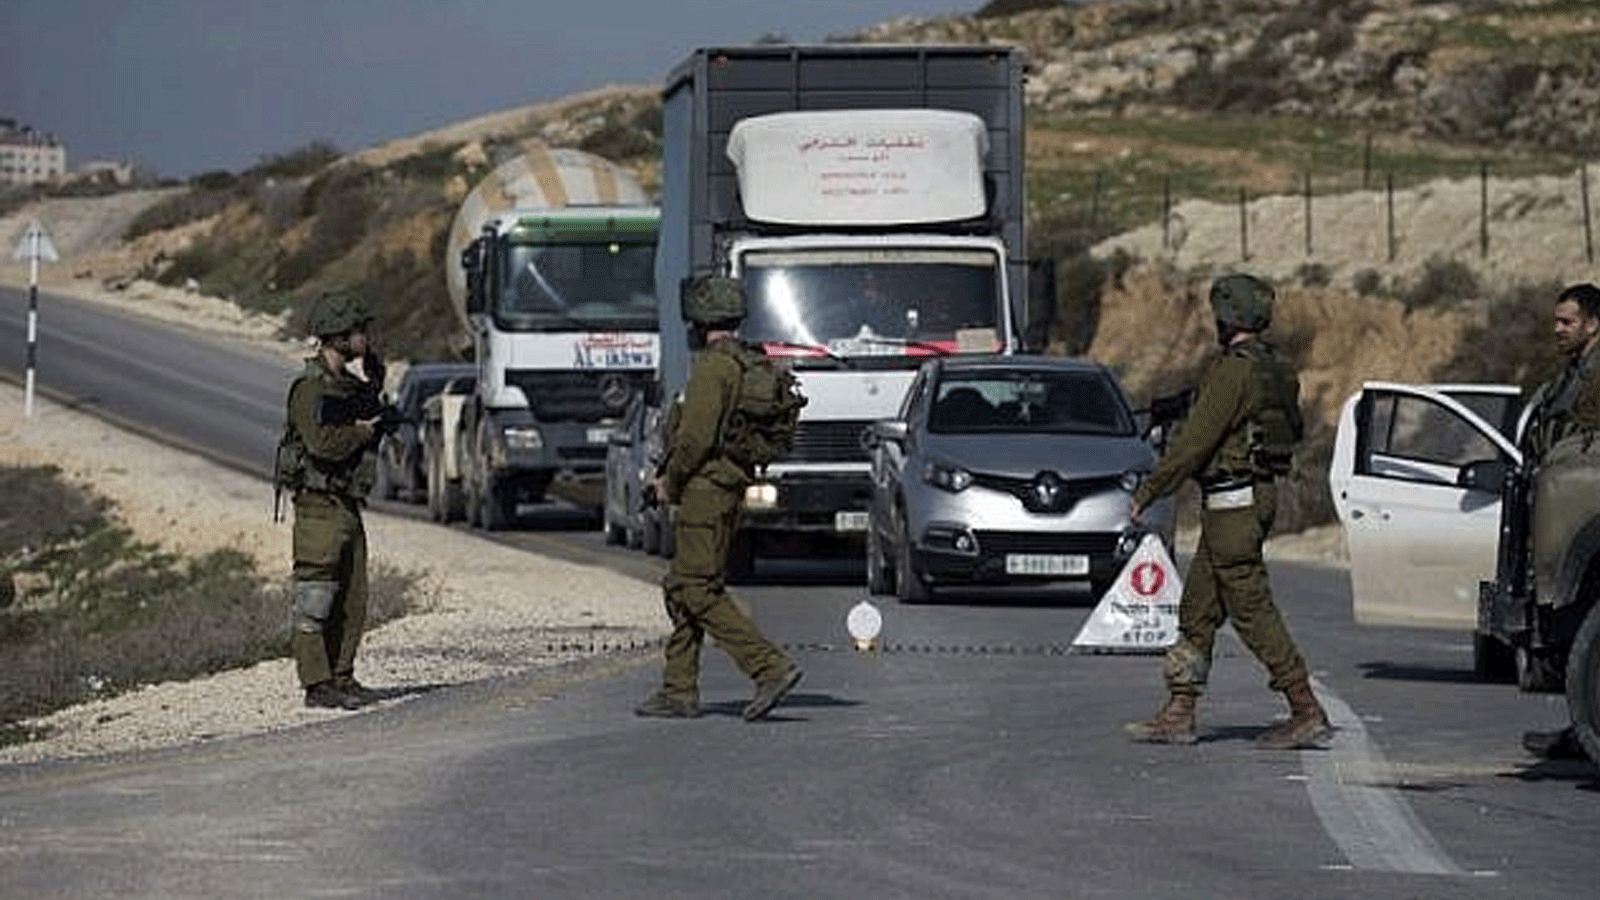 جنود إسرائيليون يتفقدون سيارات عند حاجز بالقرب من مدينة نابلس في الضفة الغربية(أرشيفية)